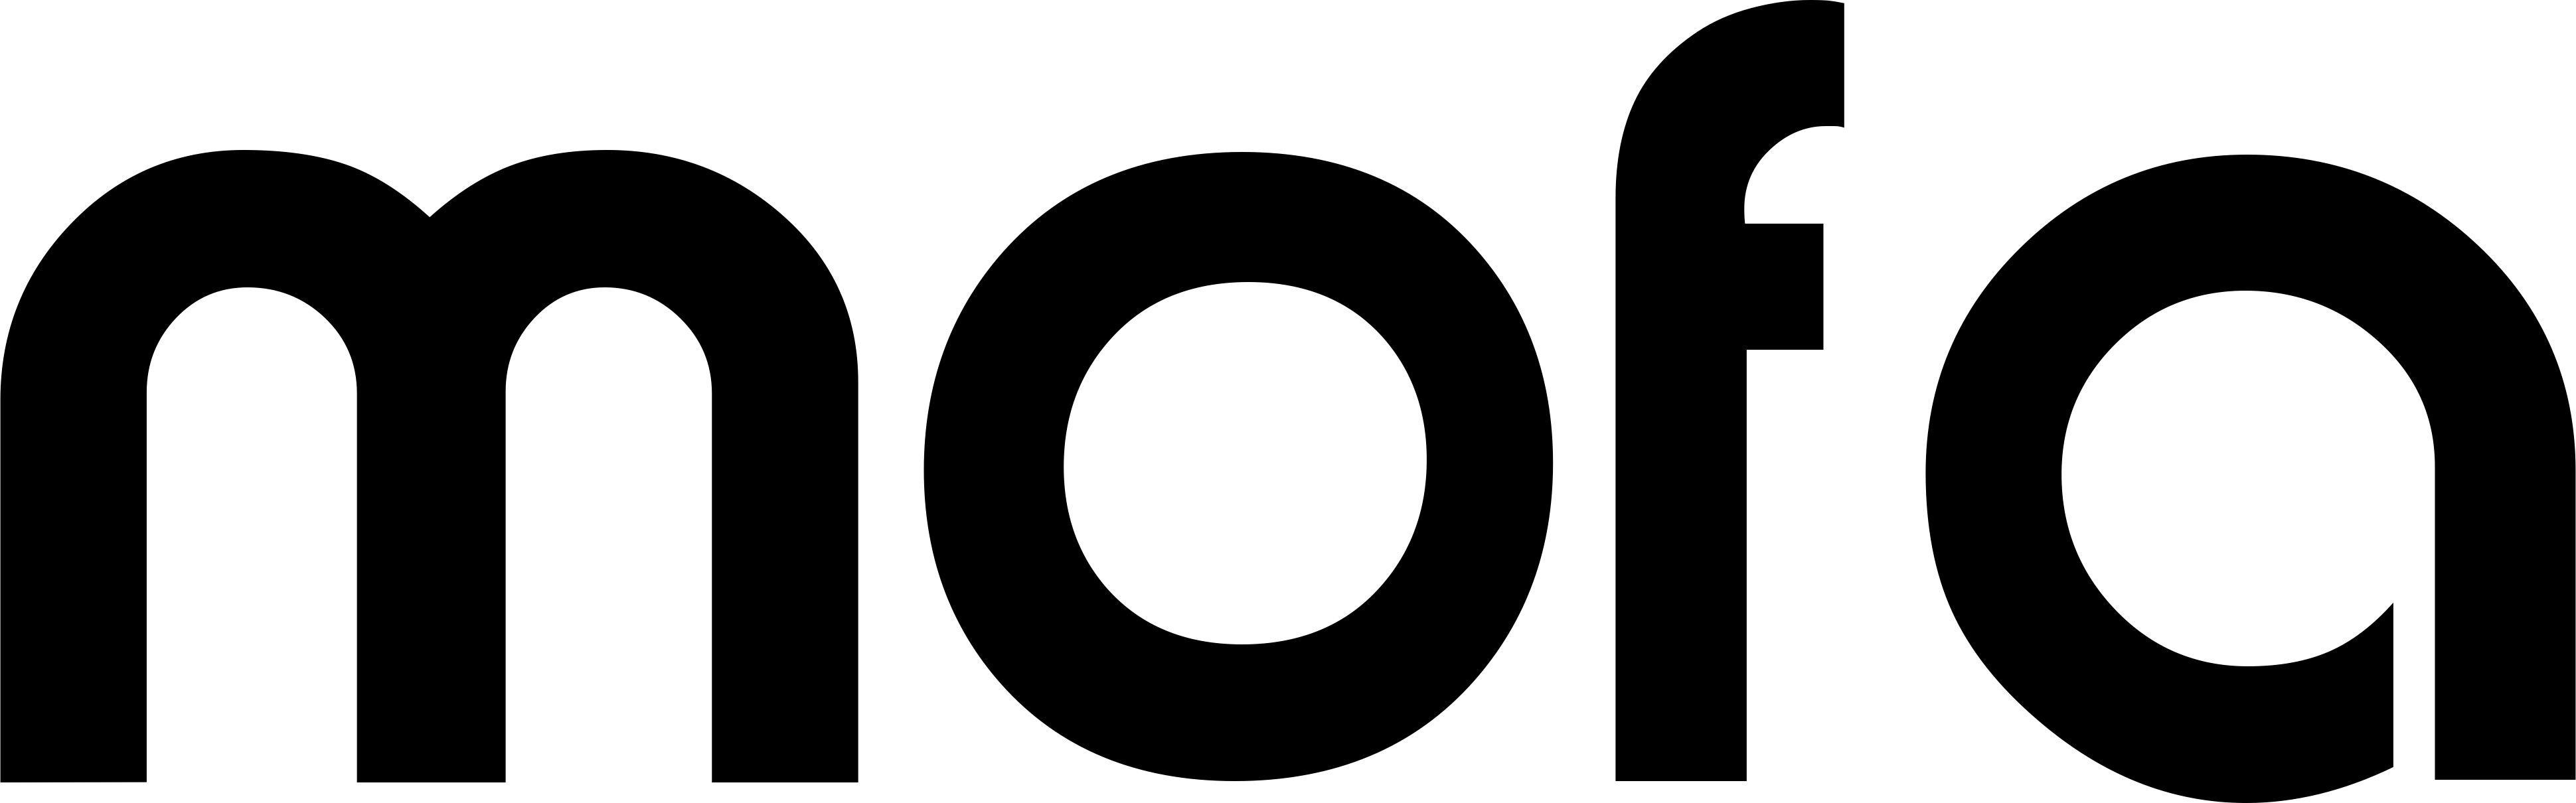 mofa logo schwarz